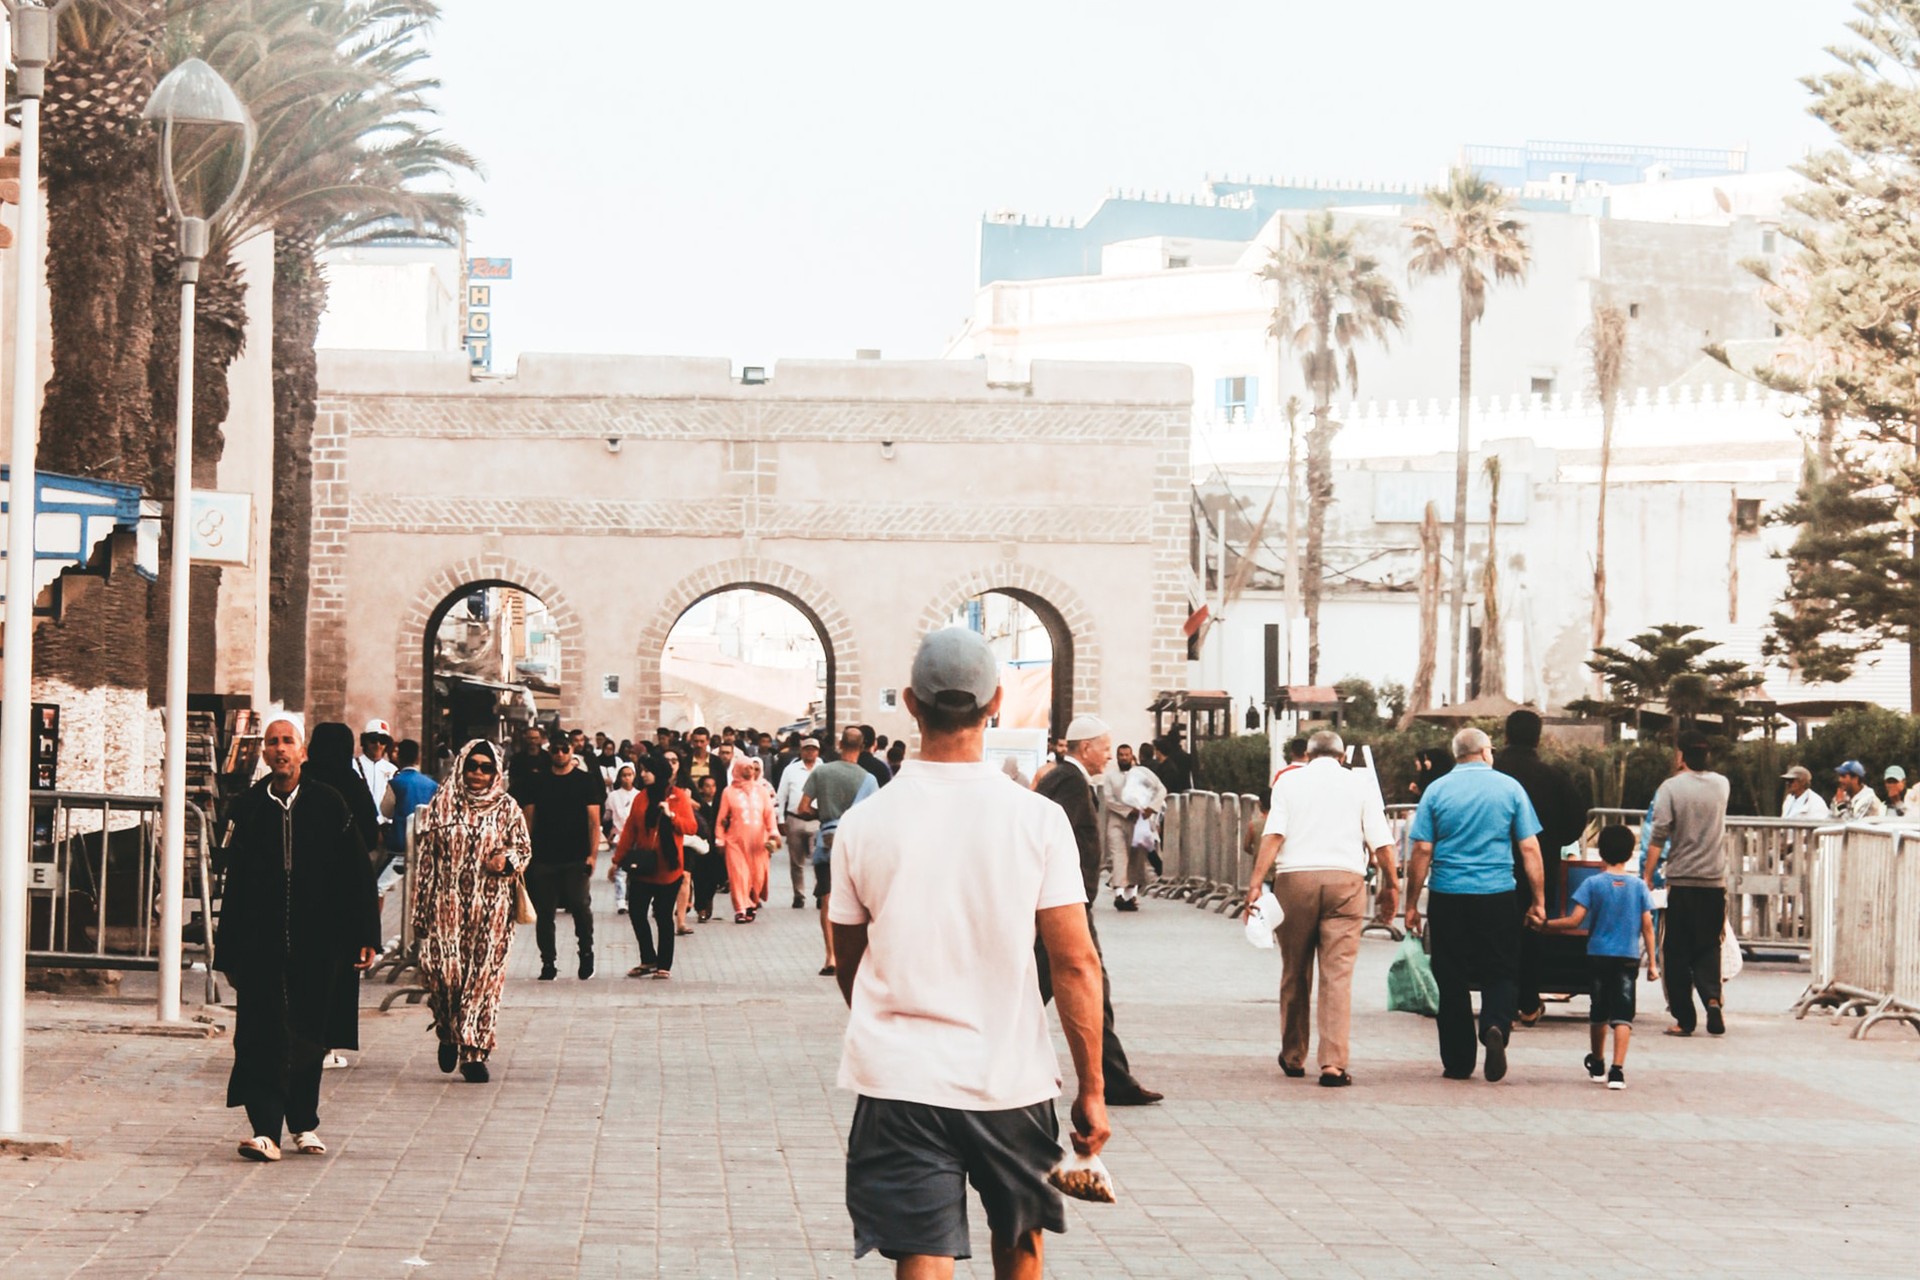 Se déplacer dans Essaouira